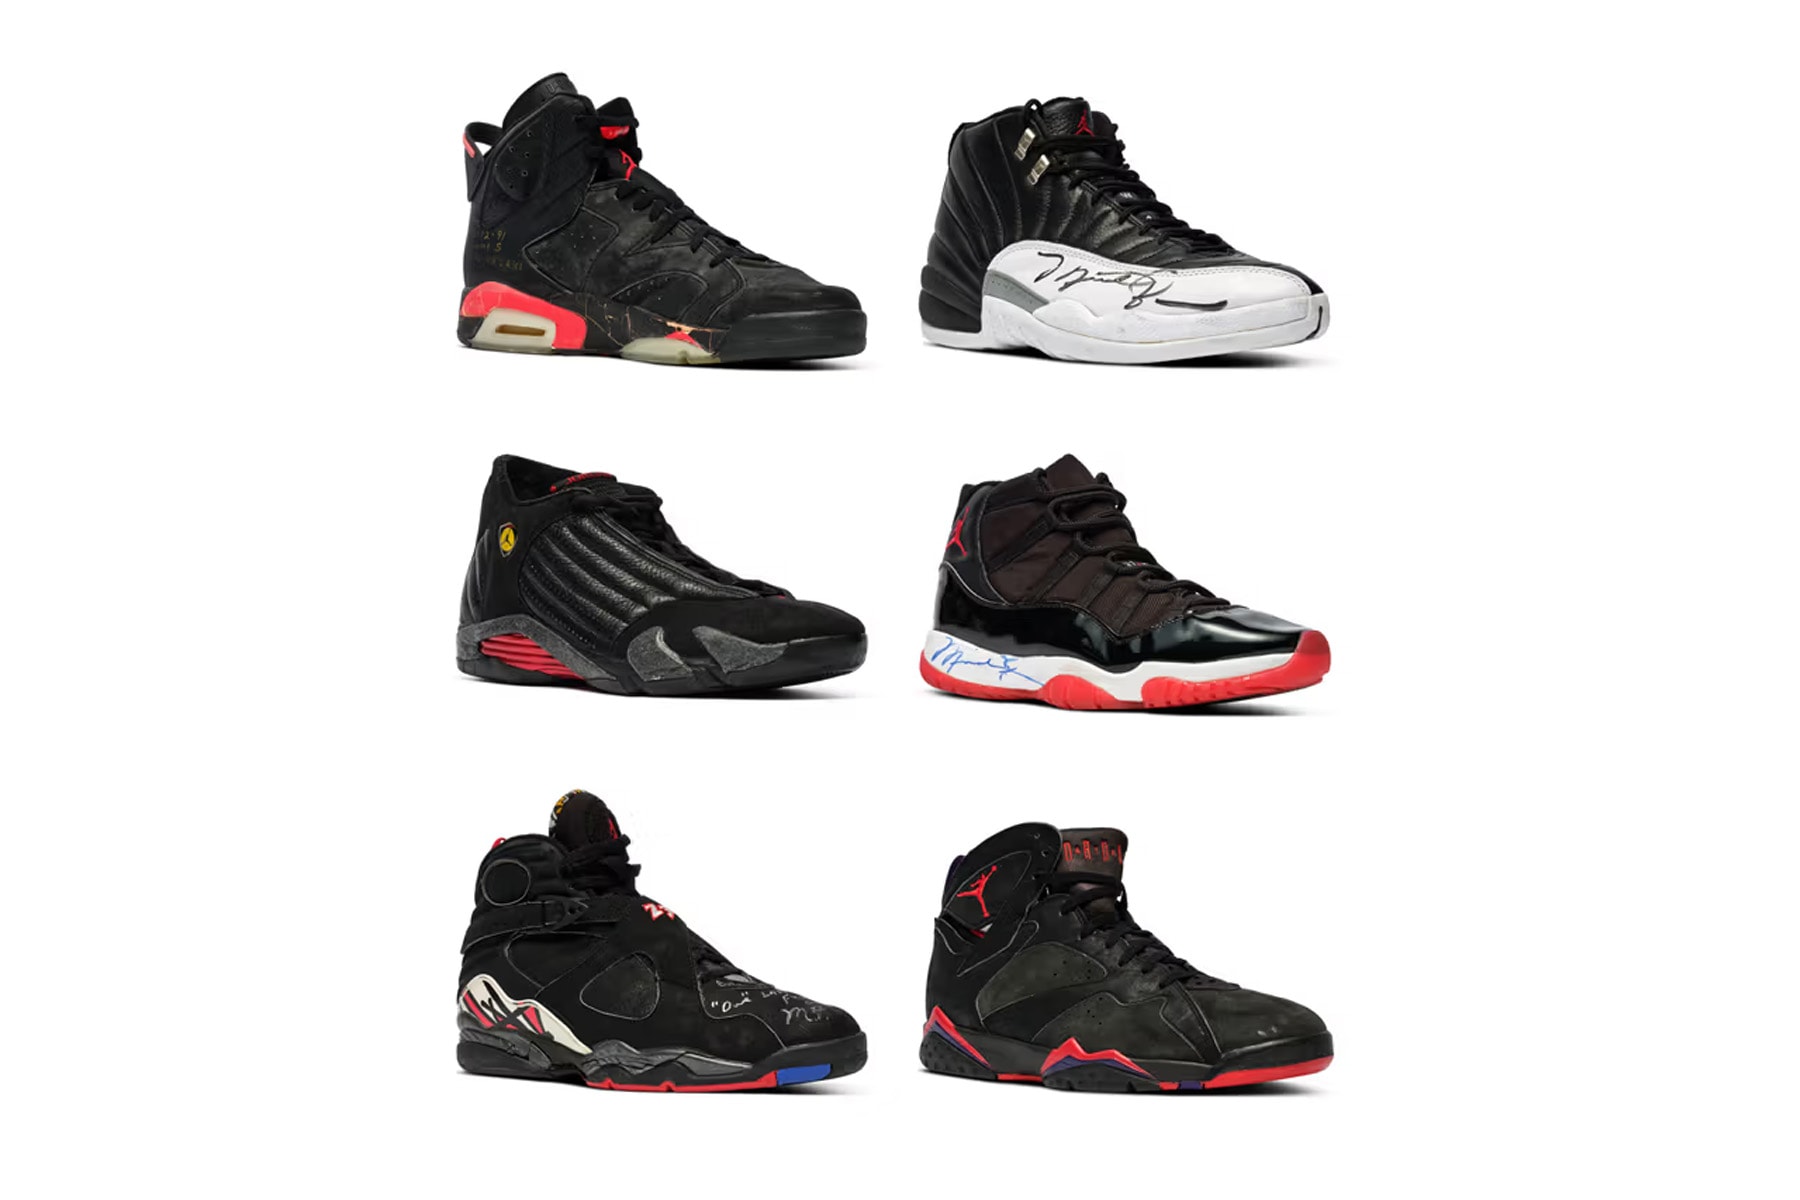 マイケル・ジョーダンの NBA ファイナル着用シューズ6足が約12億円で落札 The Complete Set of Michael Jordan's Championship Sneakers Sells for $8 Million USD at Sotheby's